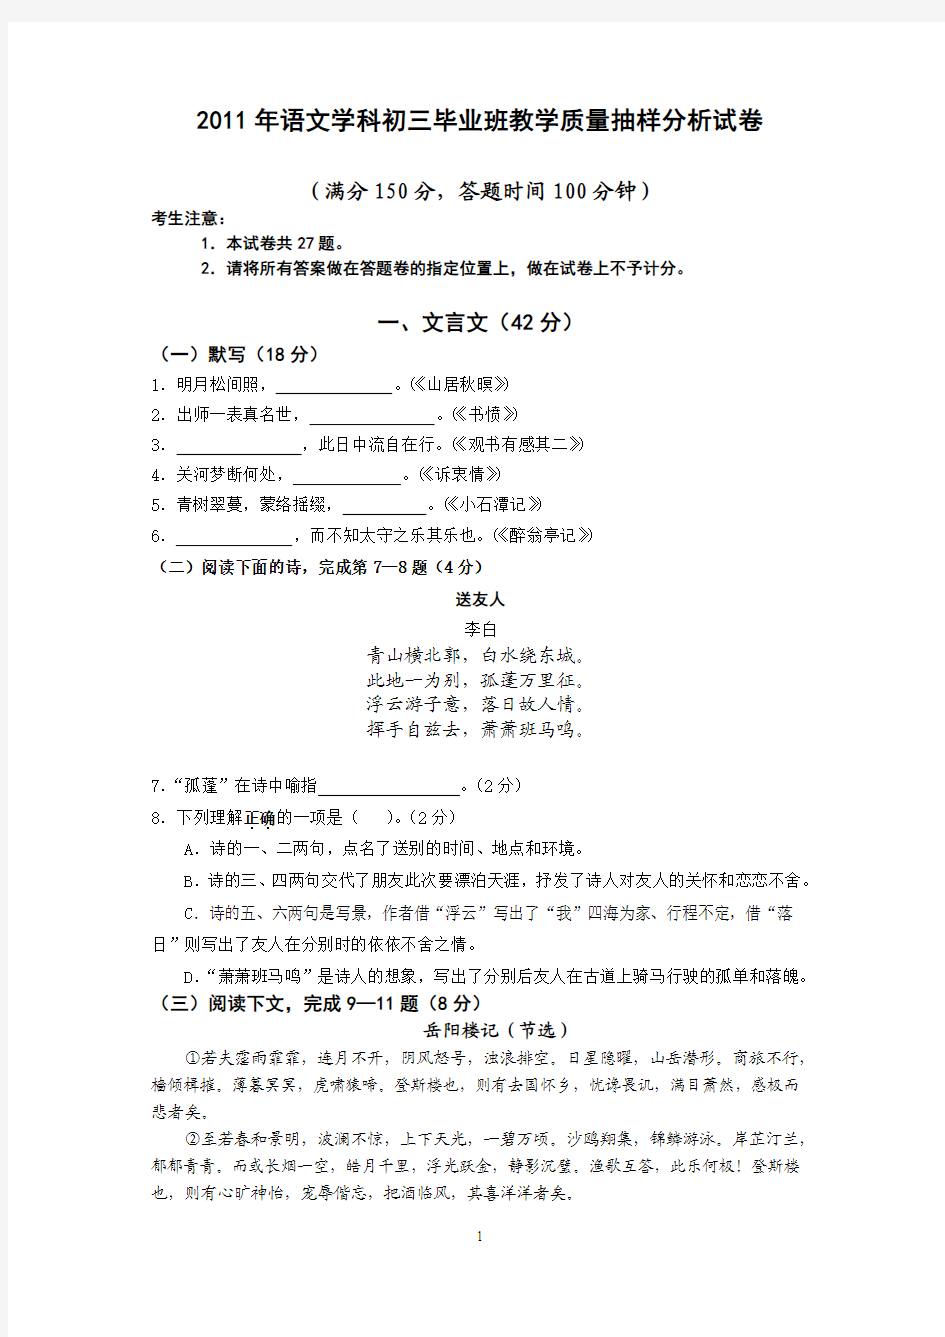 2011年上海市语文学科初三毕业班教学质量抽样分析试卷